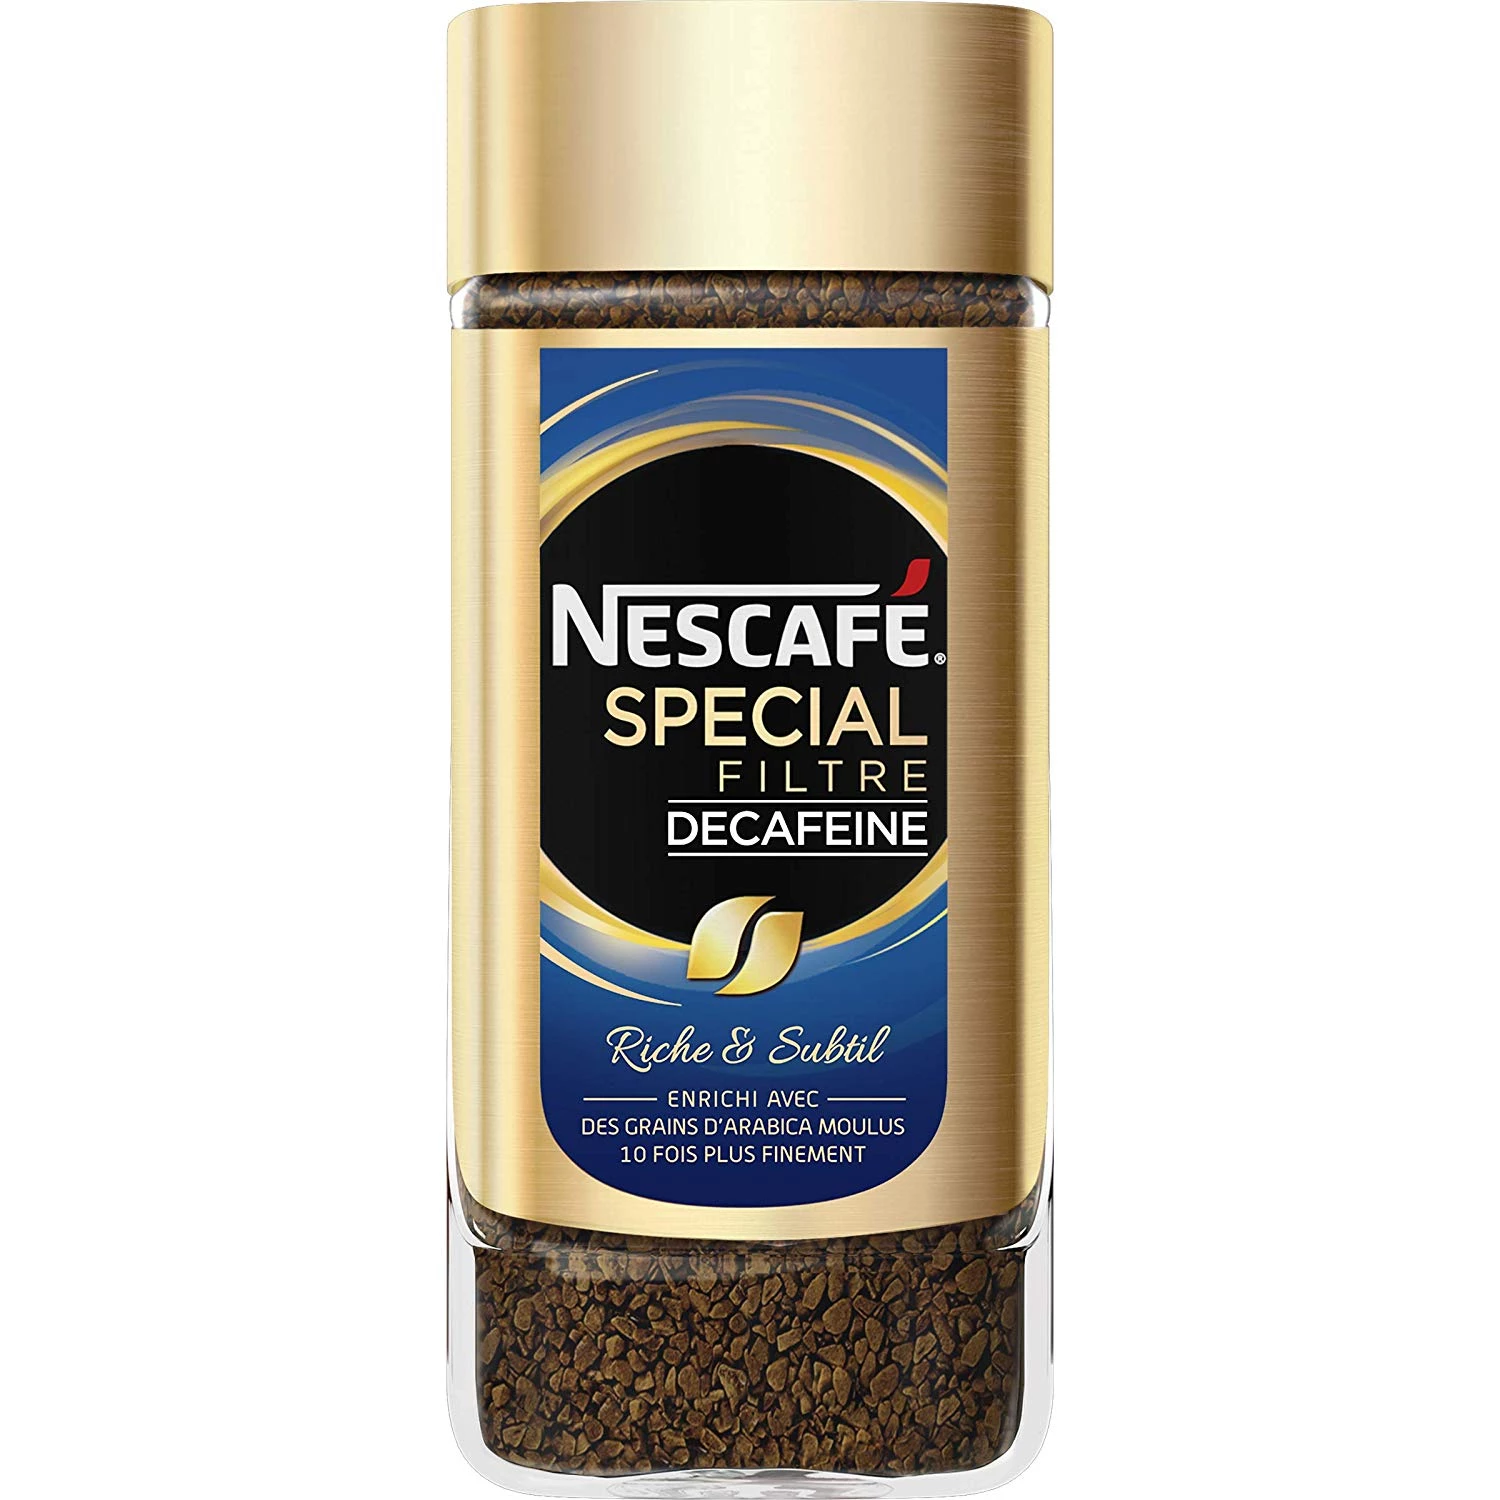 Caffè speciale decaffeinato filtro 100g - NESCAFÉ